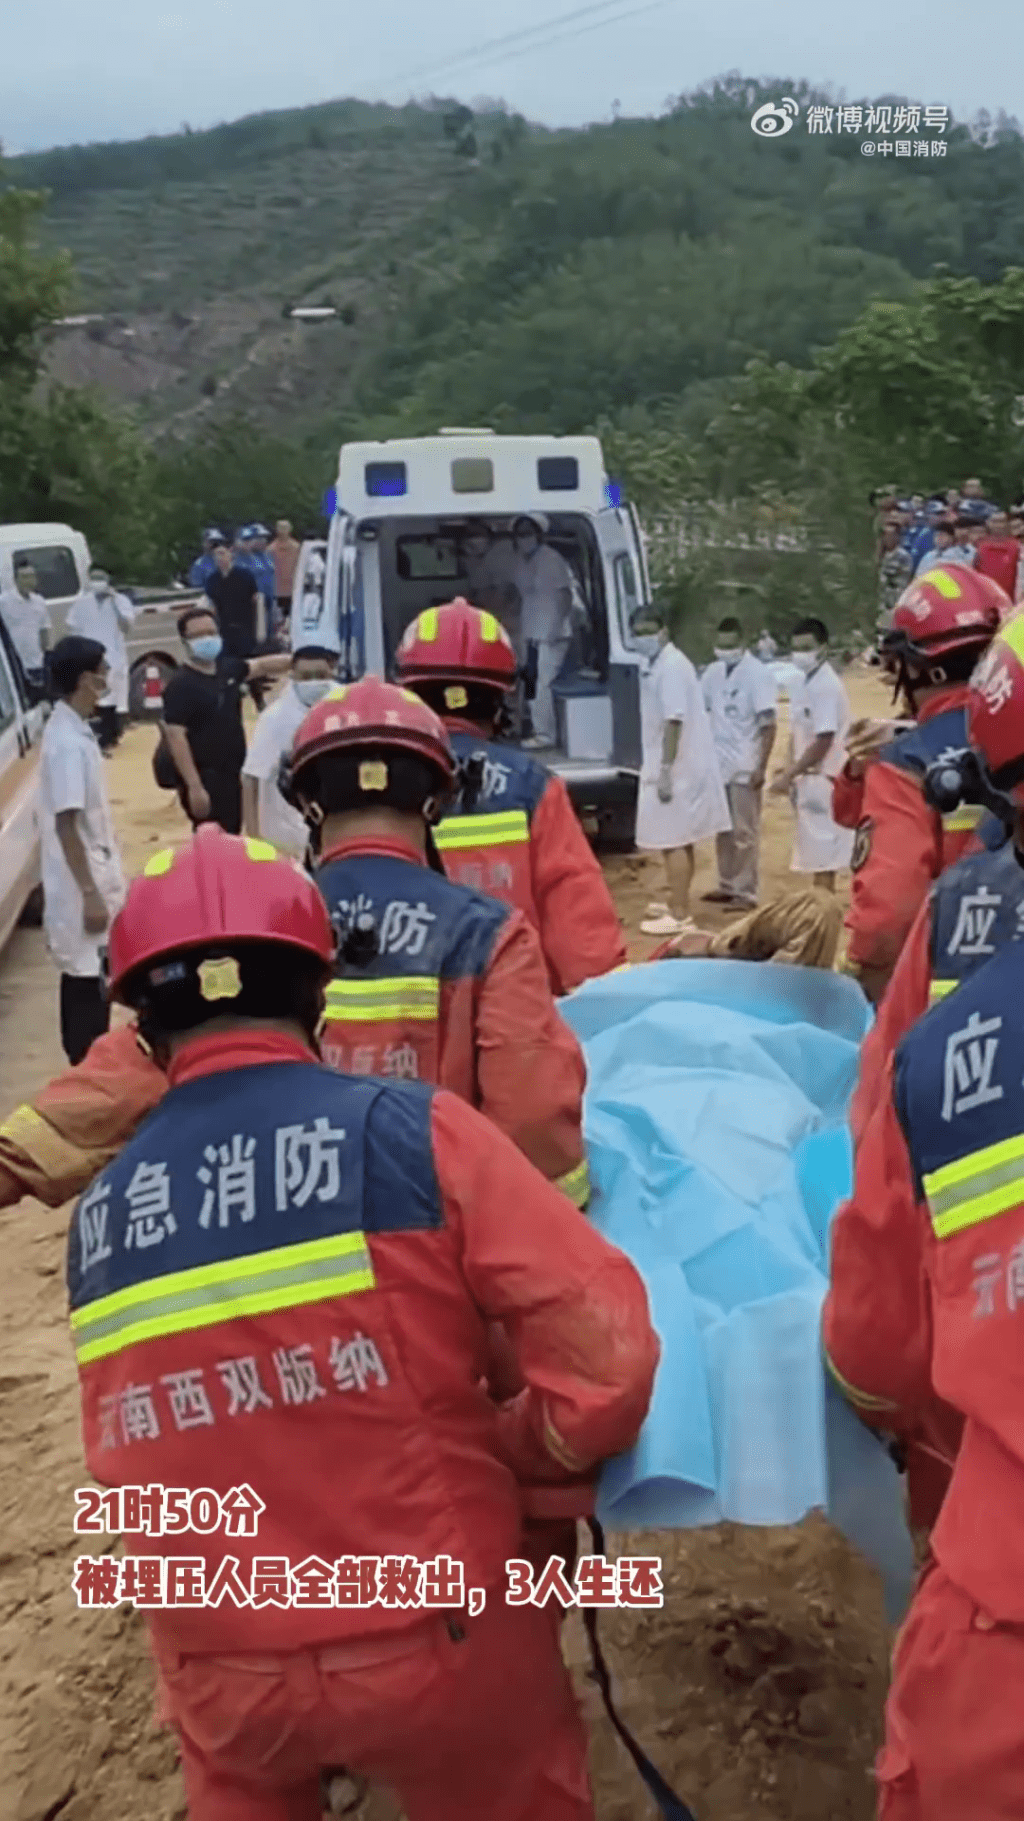 被困6名人員全部救出，確認死亡3人、3人送醫院救治。 中國消防